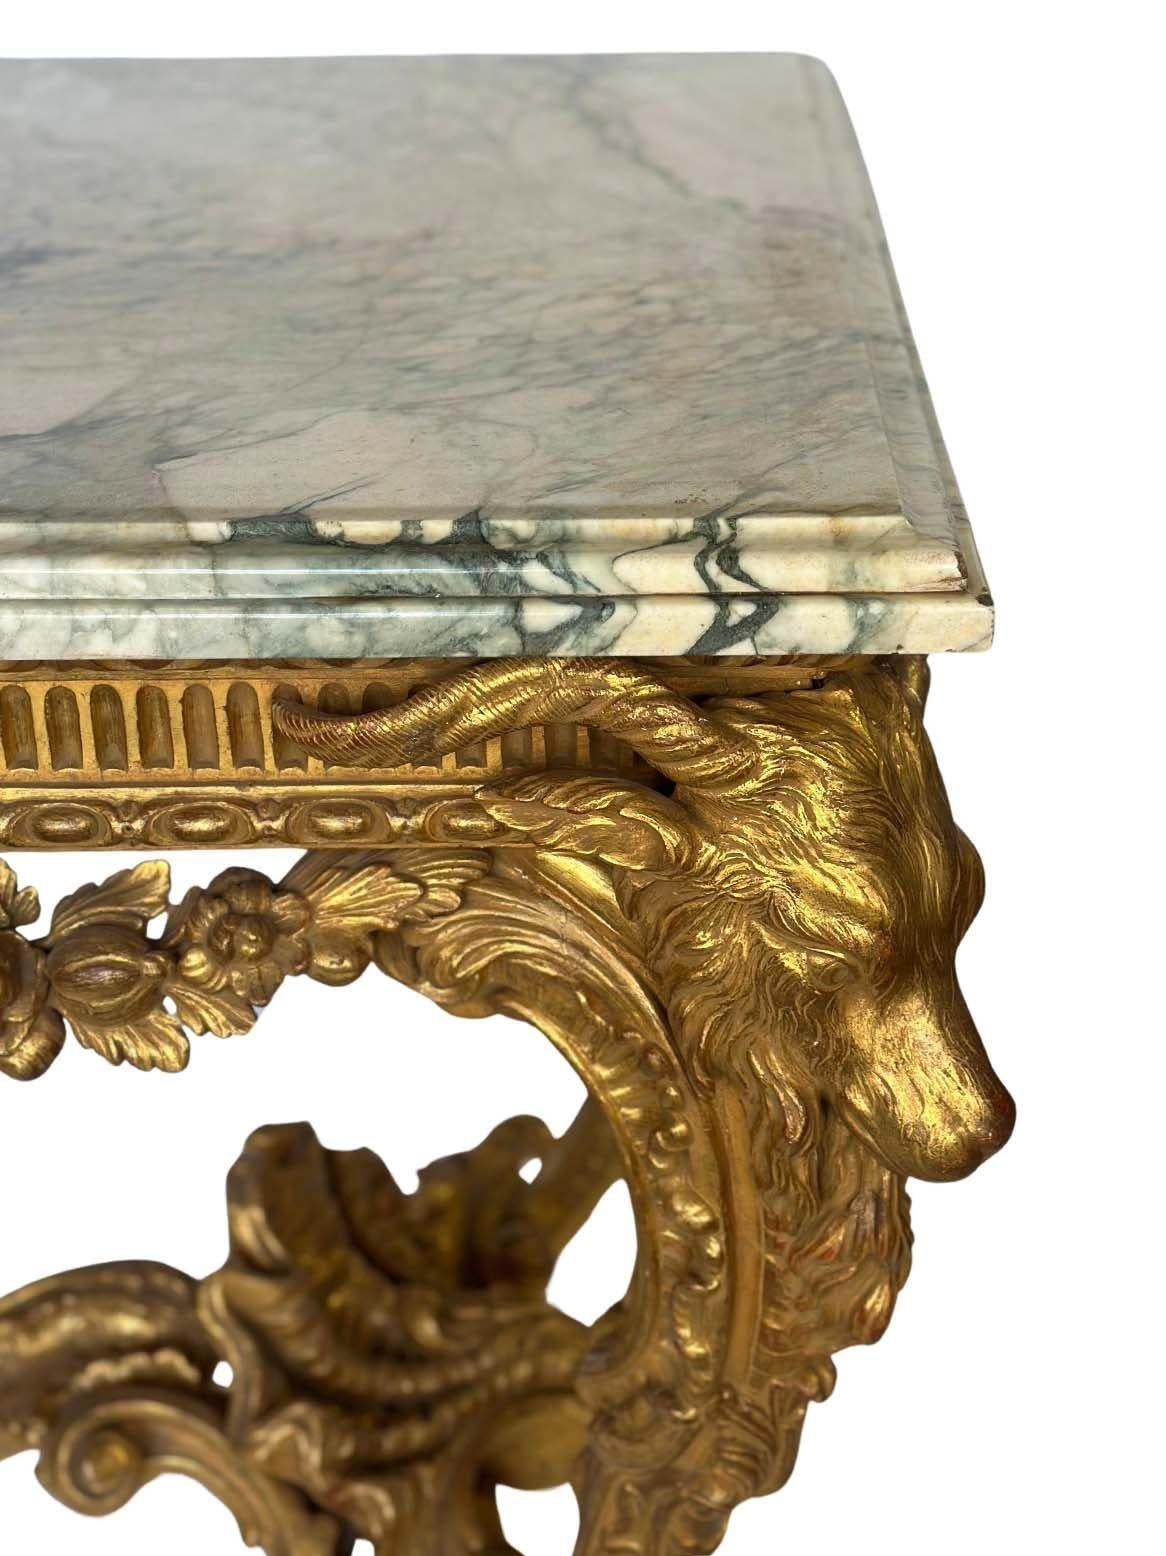 Außergewöhnlicher klassizistischer Konsolentisch aus vergoldetem Holz, hergestellt in England im späten 19. Jahrhundert, bestehend aus einem handgeschnitzten Tischrahmen aus vergoldetem Holz mit Widderköpfen und -füßen sowie einer zentralen Figur